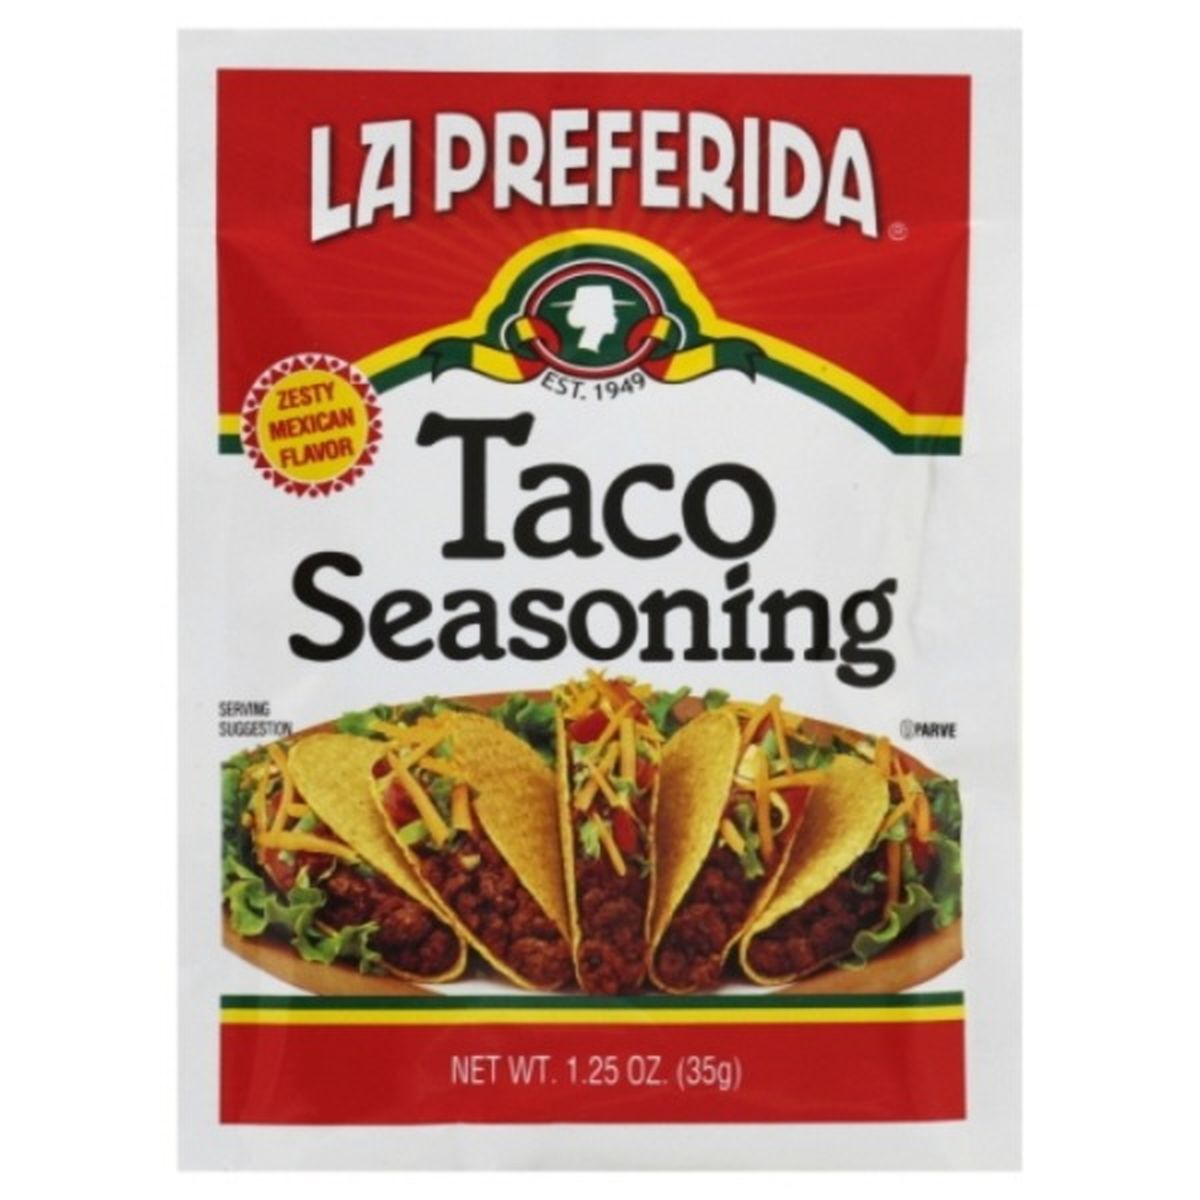 Calories in La Preferida Taco Seasoning